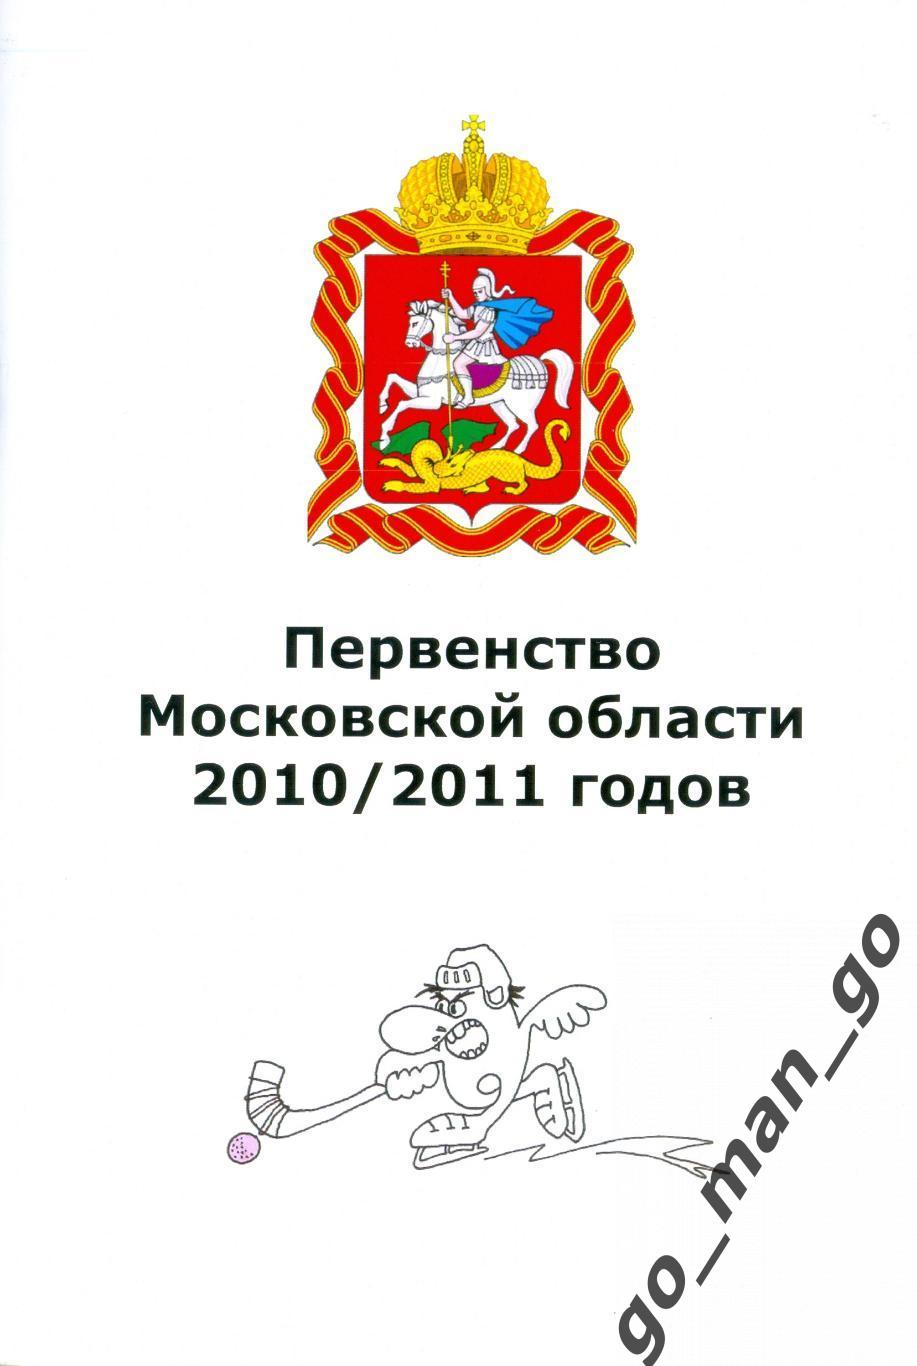 Первенство Московской области. Хоккей с мячом. 2010/2011.